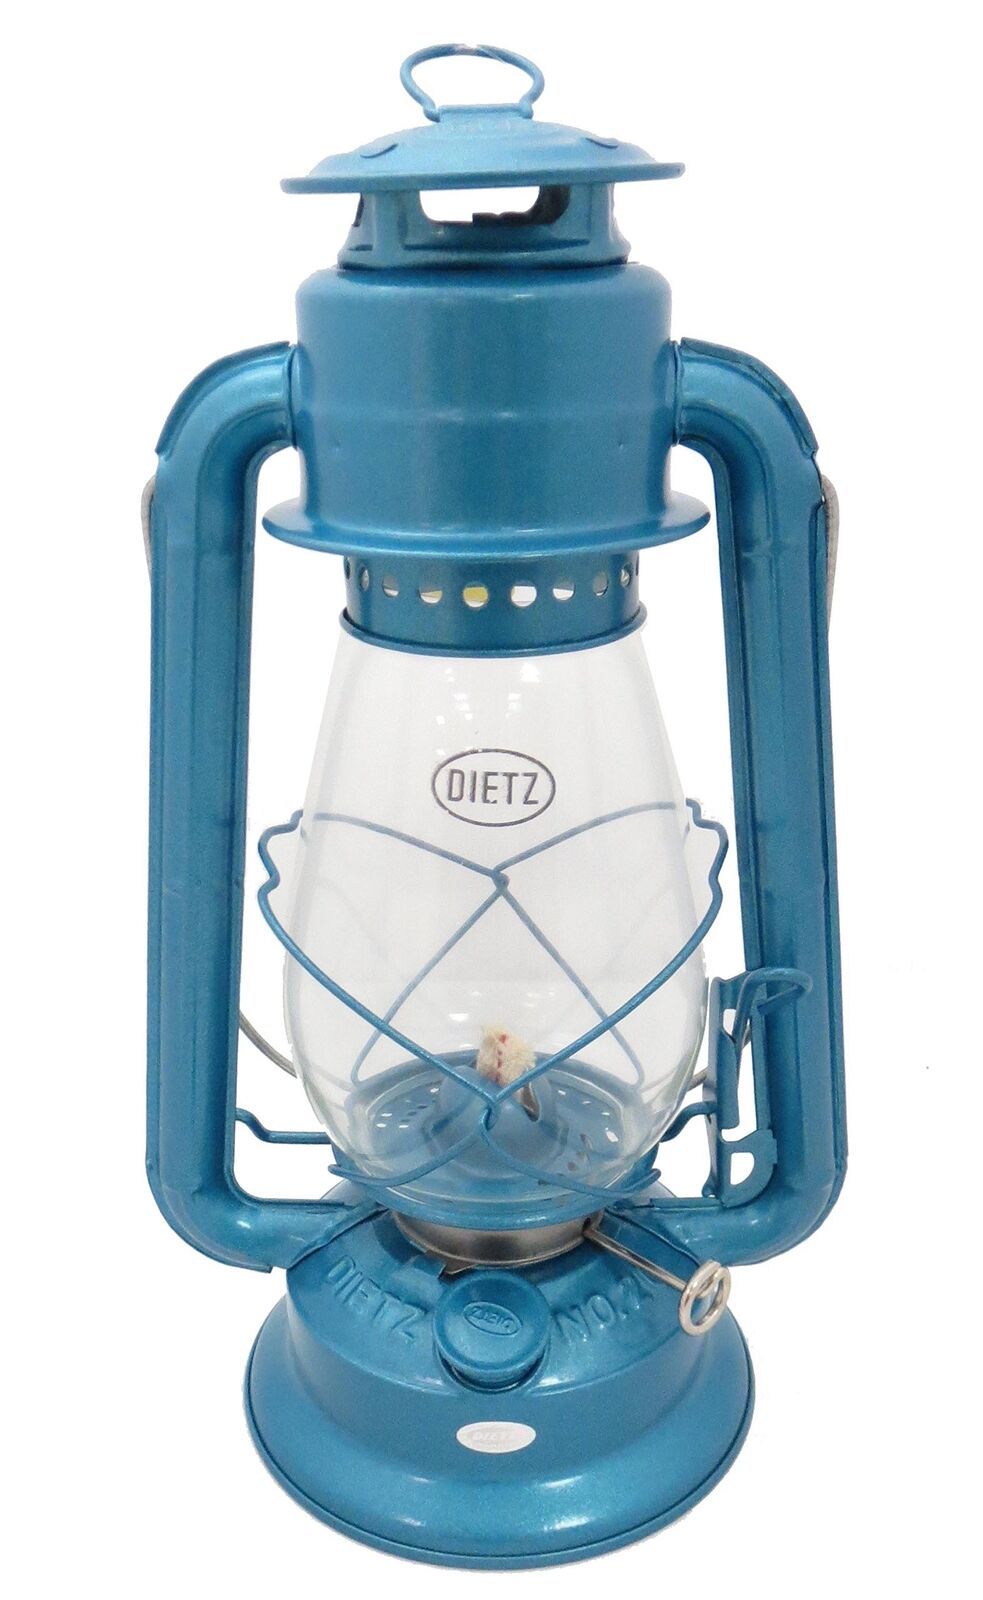 Dietz #20 Junior Oil Burning Lantern (Blue)